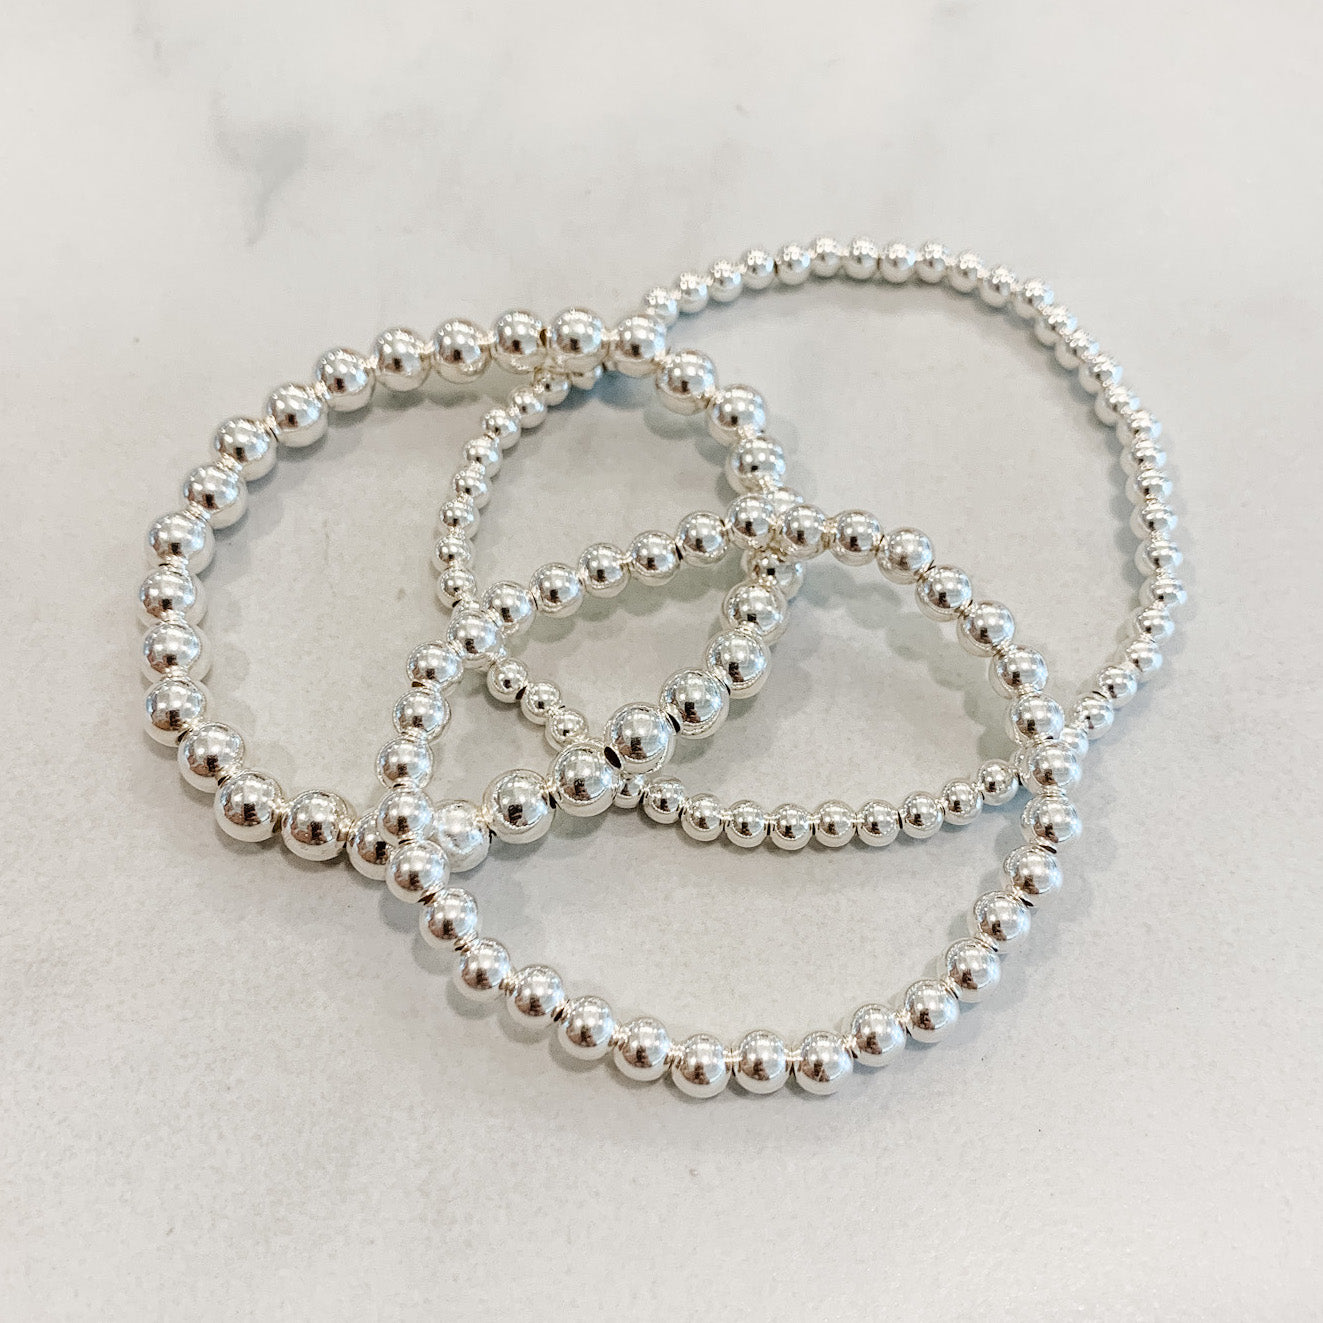 Children's Classic Silver Beaded Bracelet Set